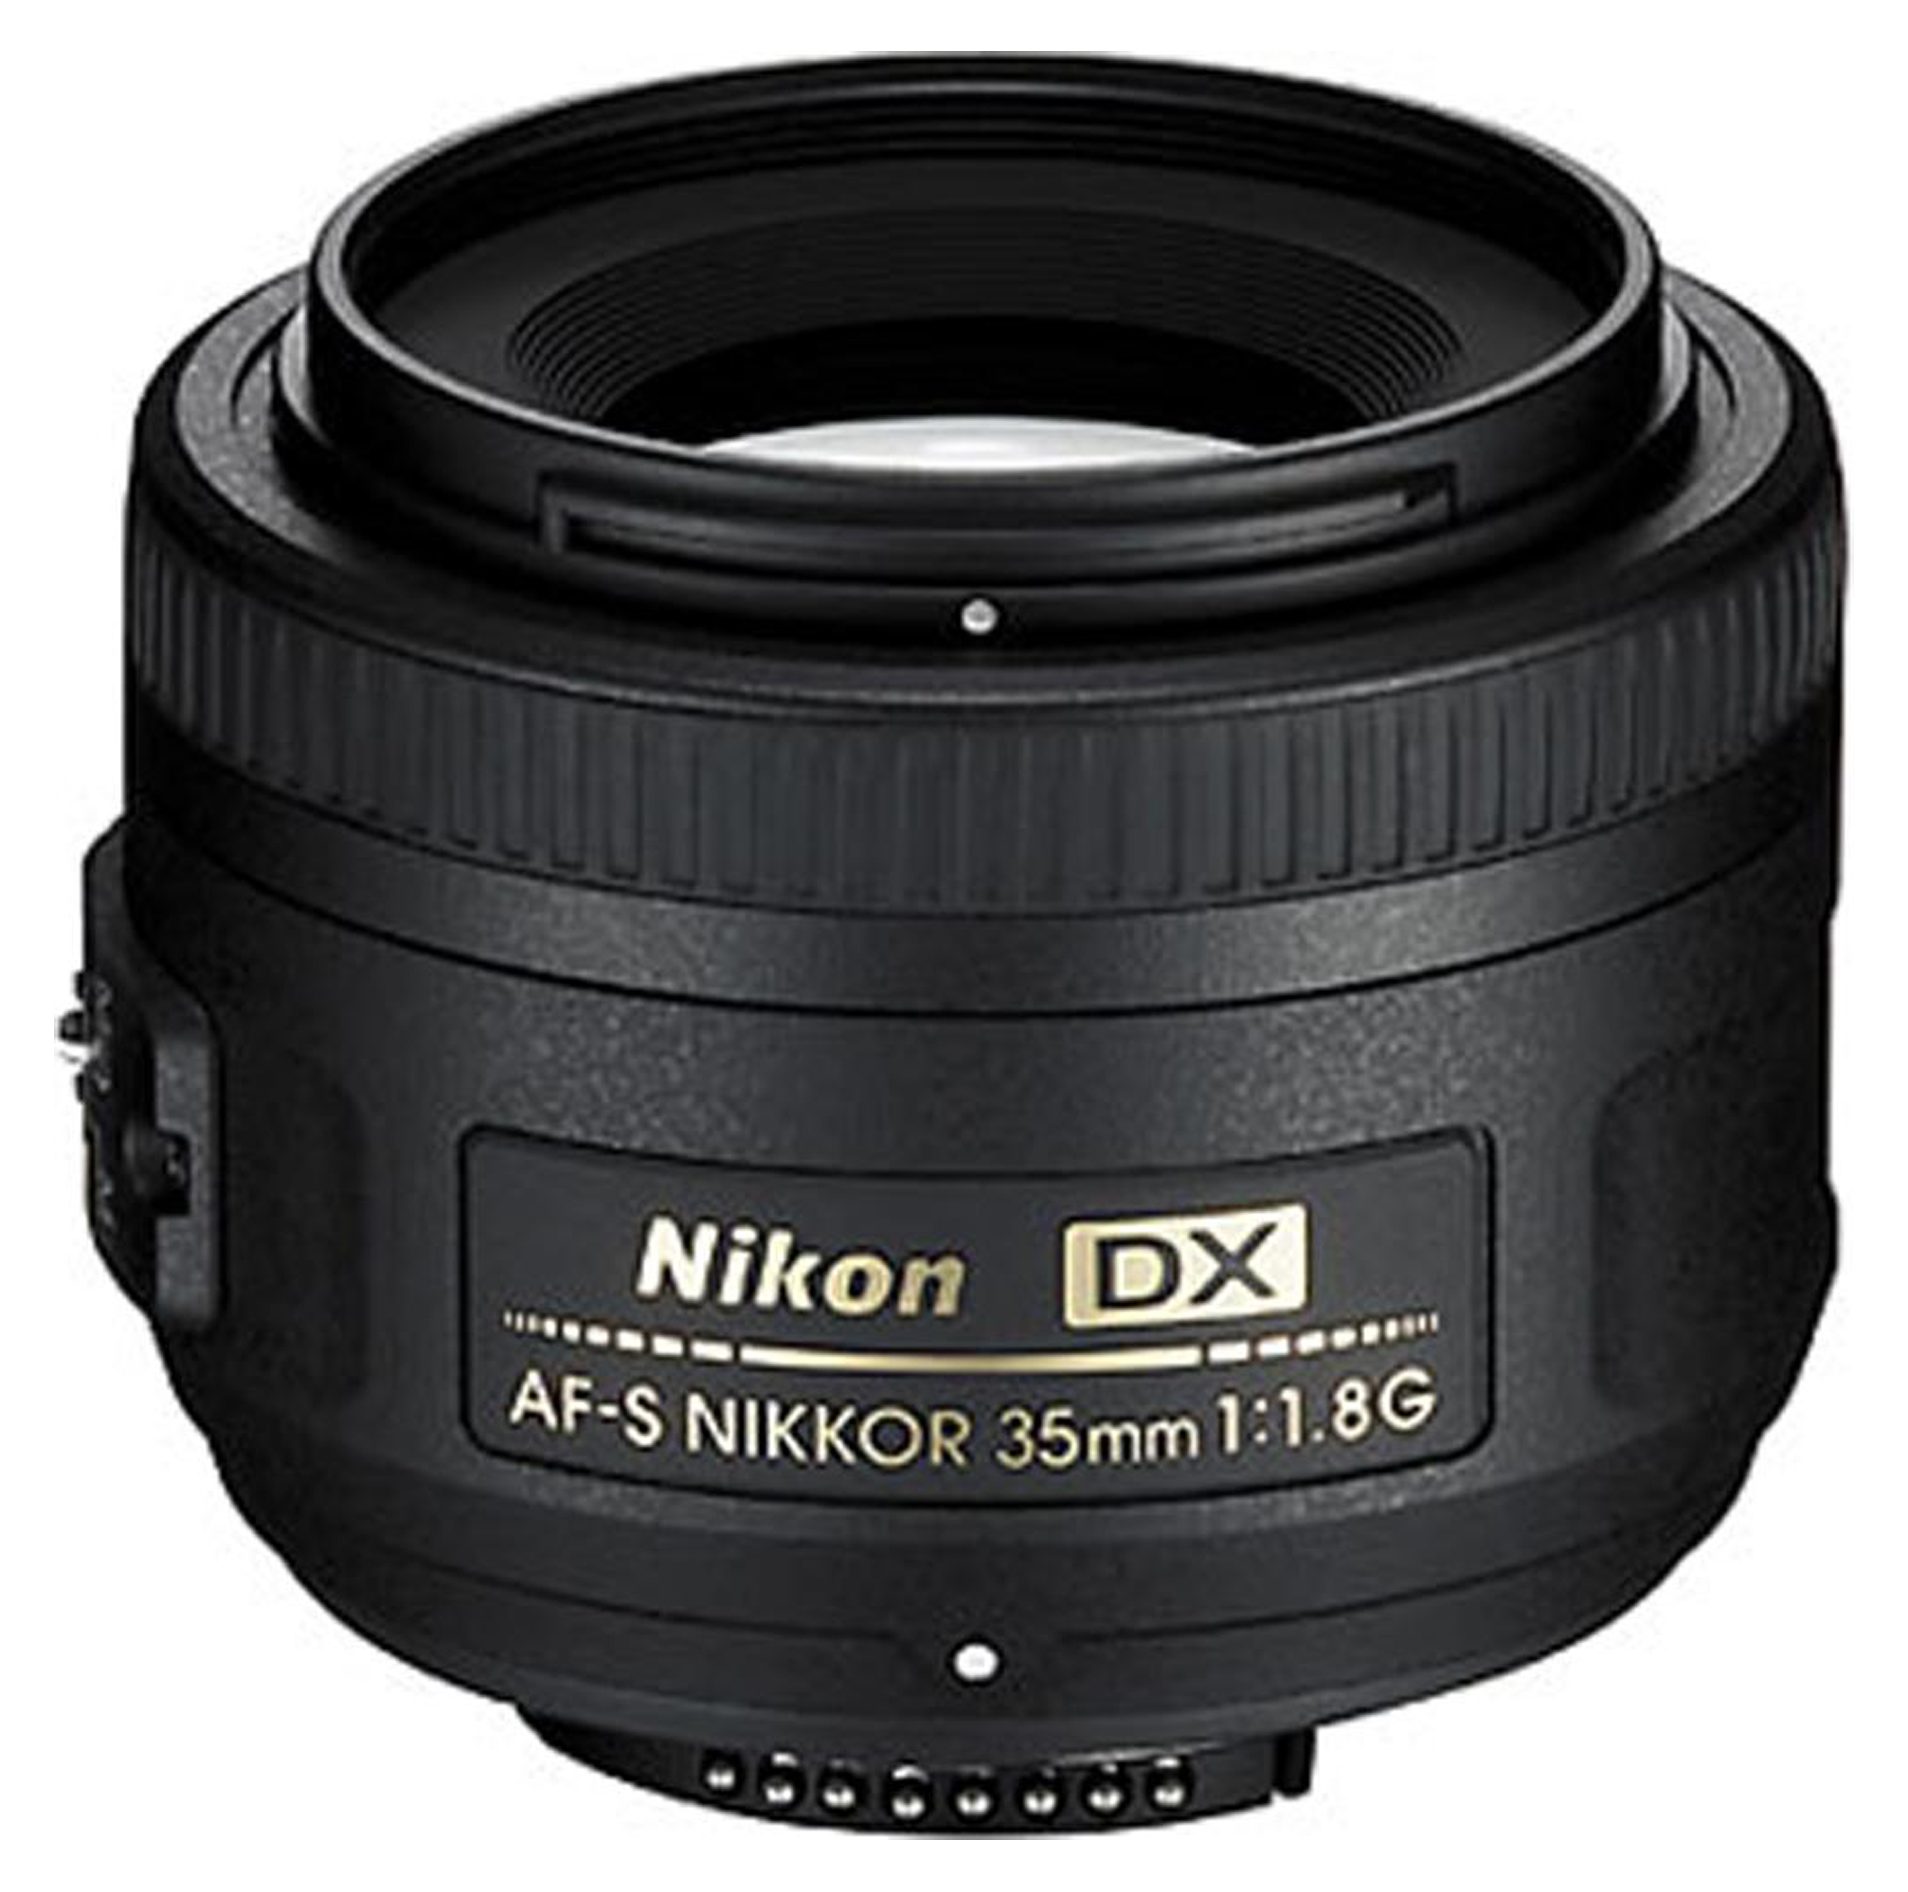 Nikon 35mm f 1.8 af s